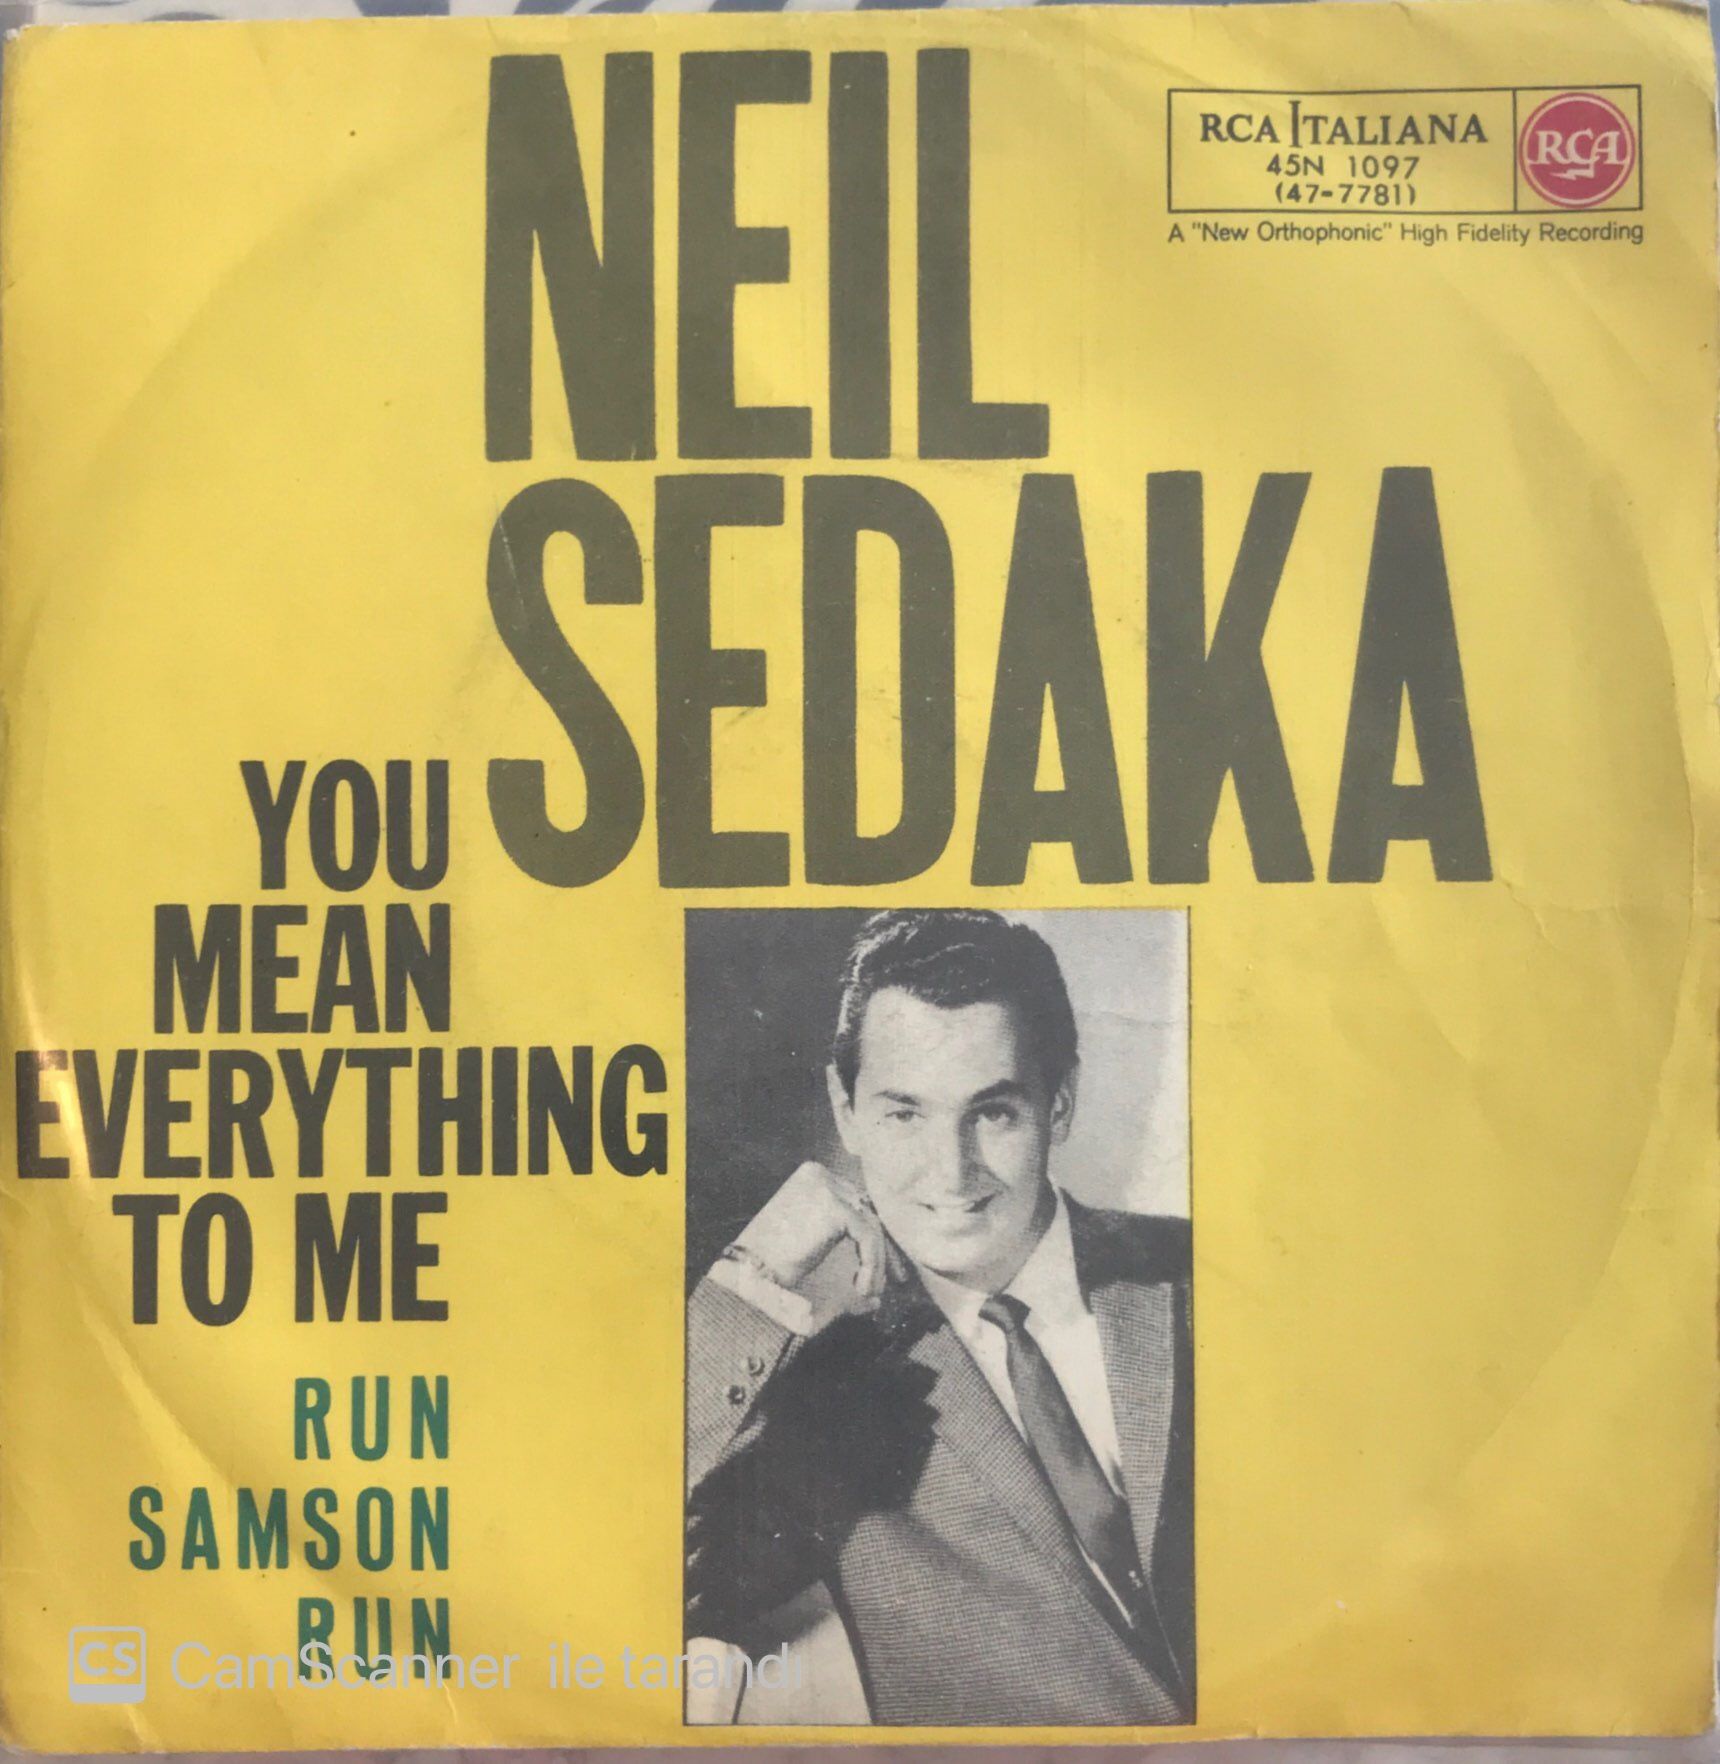 Neil Sedaka - You Mean Everthing To Me 45lik